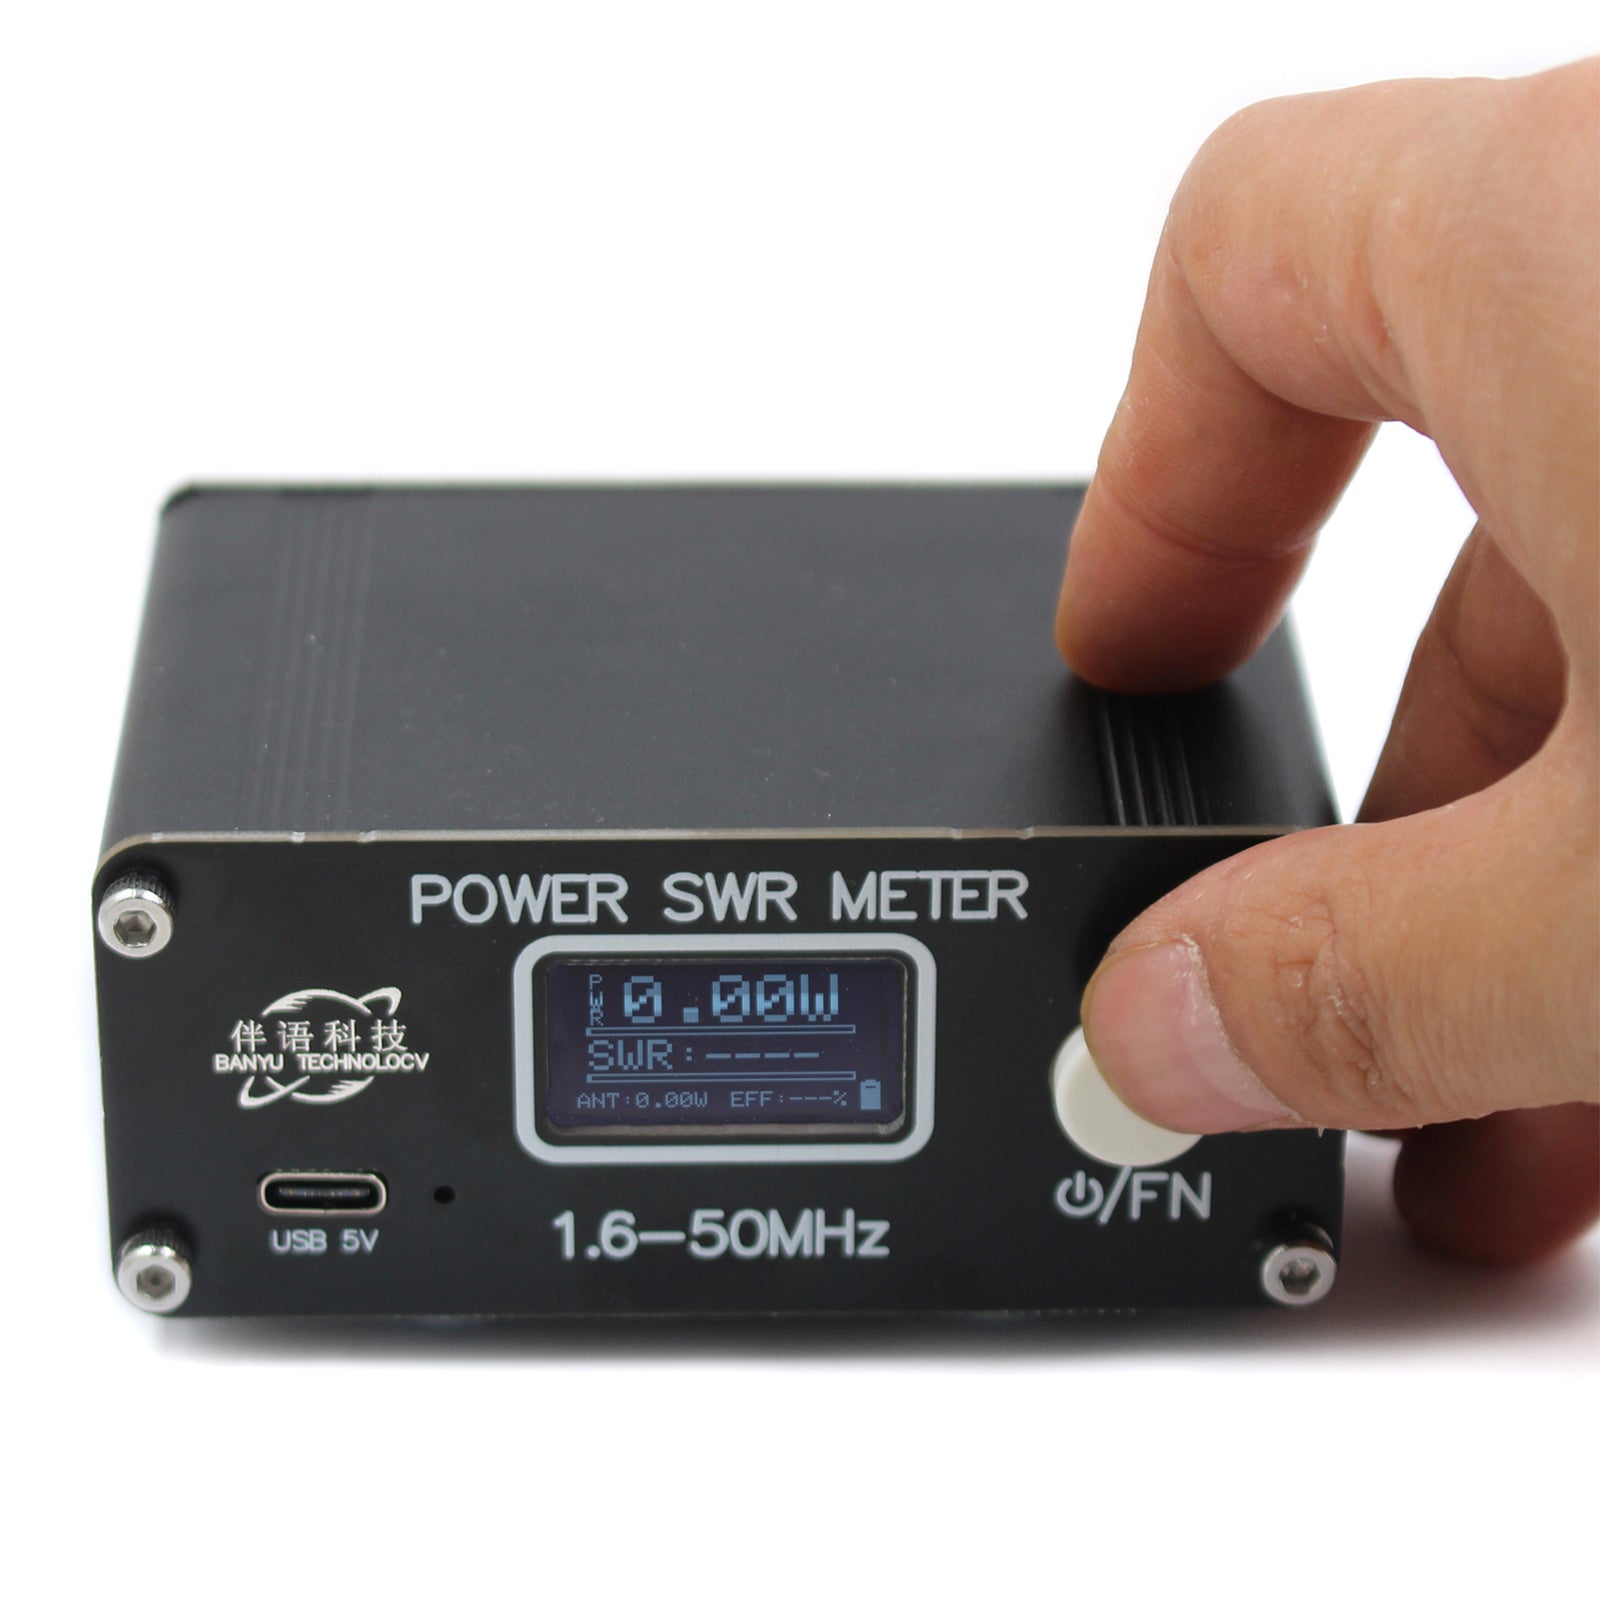 QRP 150W 1.6-50MHz SWR HF compteur d&#39;ondes stationnaires à ondes courtes SWR/compteur de puissance FM/AM/CW